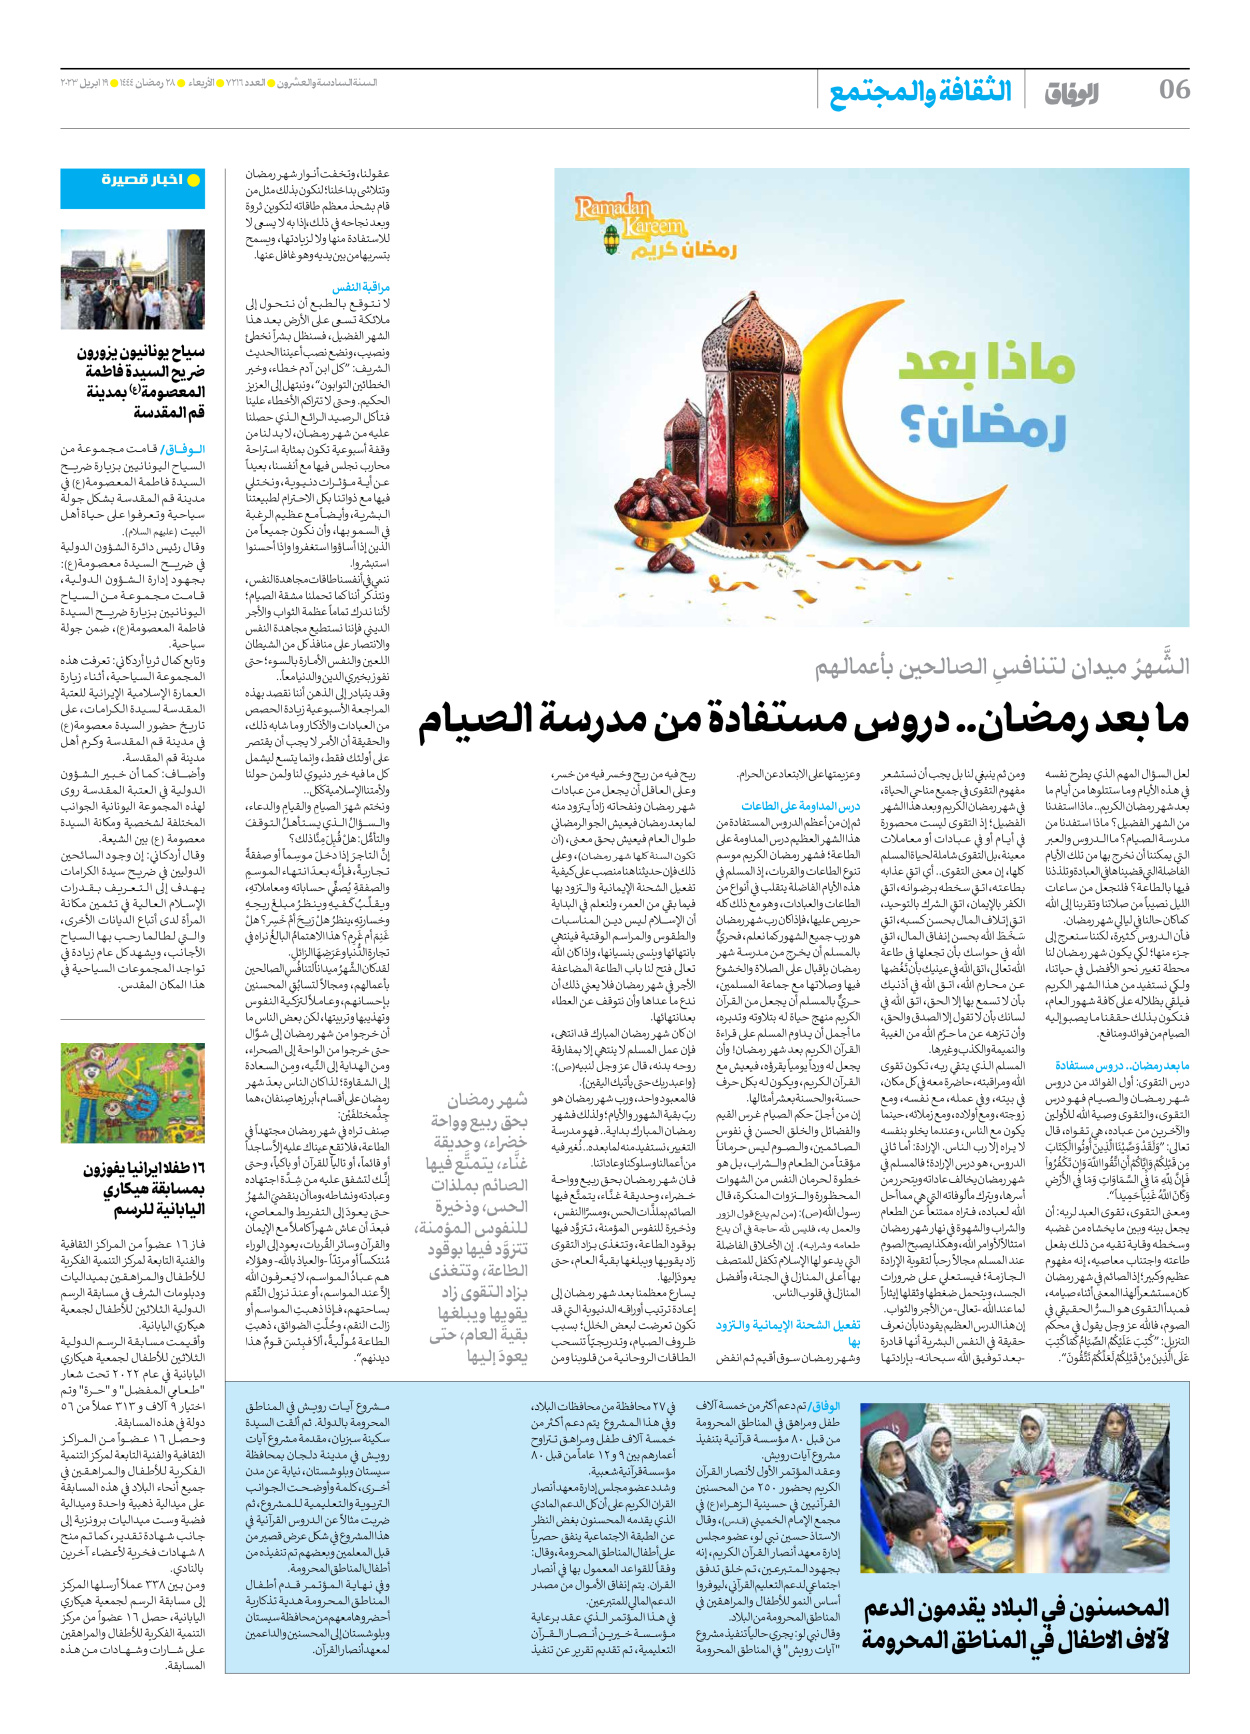 صحیفة ایران الدولیة الوفاق - العدد سبعة آلاف ومائتان وستة عشر - ١٩ أبريل ٢٠٢٣ - الصفحة ٦